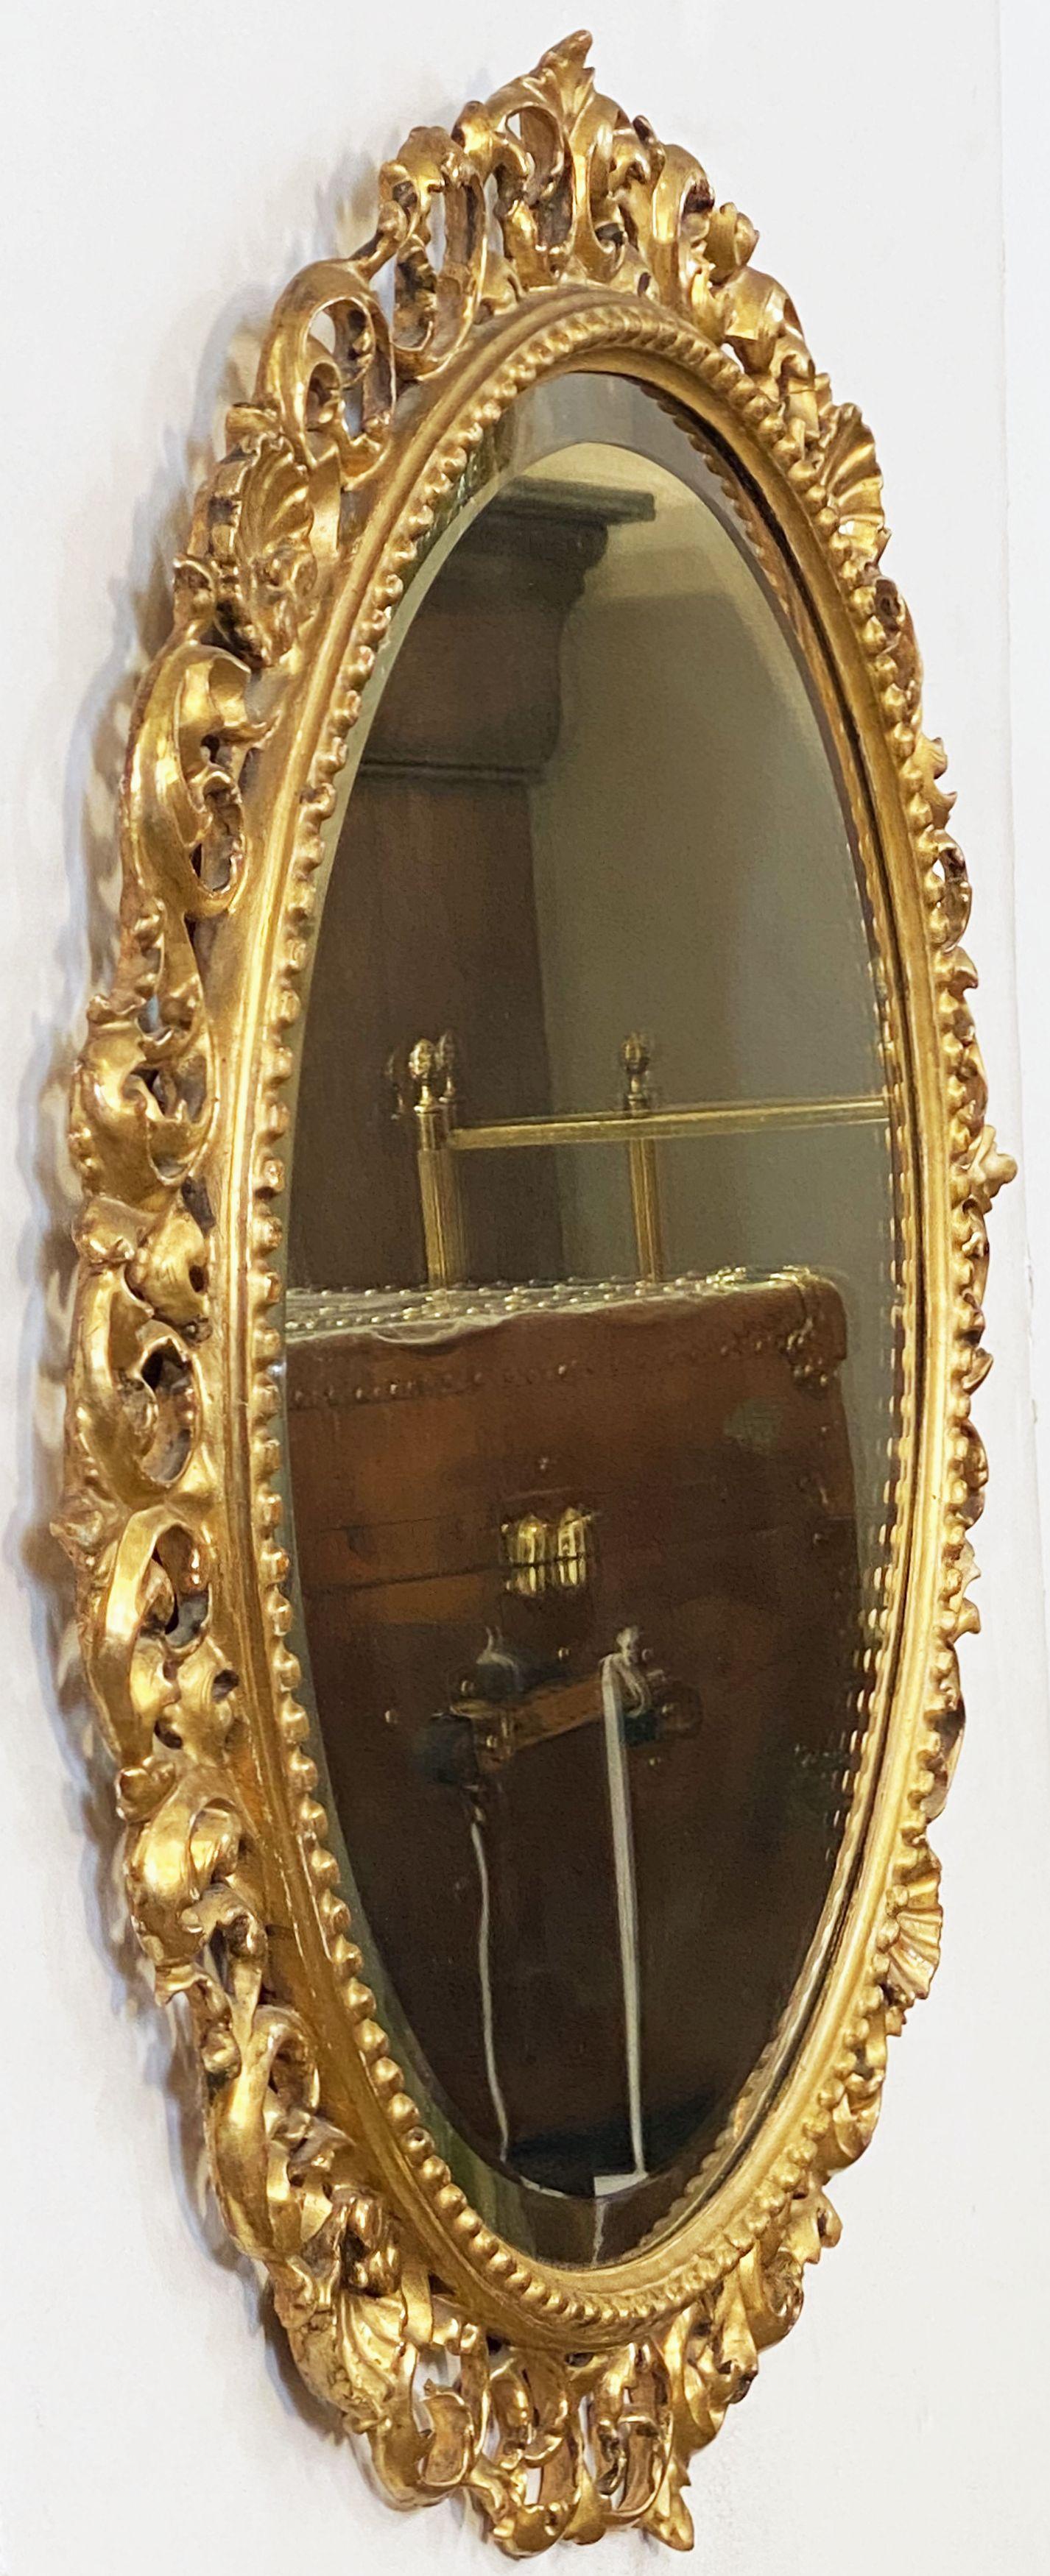 Ein feiner italienischer runder Wandspiegel aus geschnitztem Goldholz, im Rokoko- oder Florentiner Stil, mit einer runden abgeschrägten Spiegelplatte, umgeben von durchbrochenen Blattranken und Muscheln. 

Mit originalem Geschäftsetikett: Henry